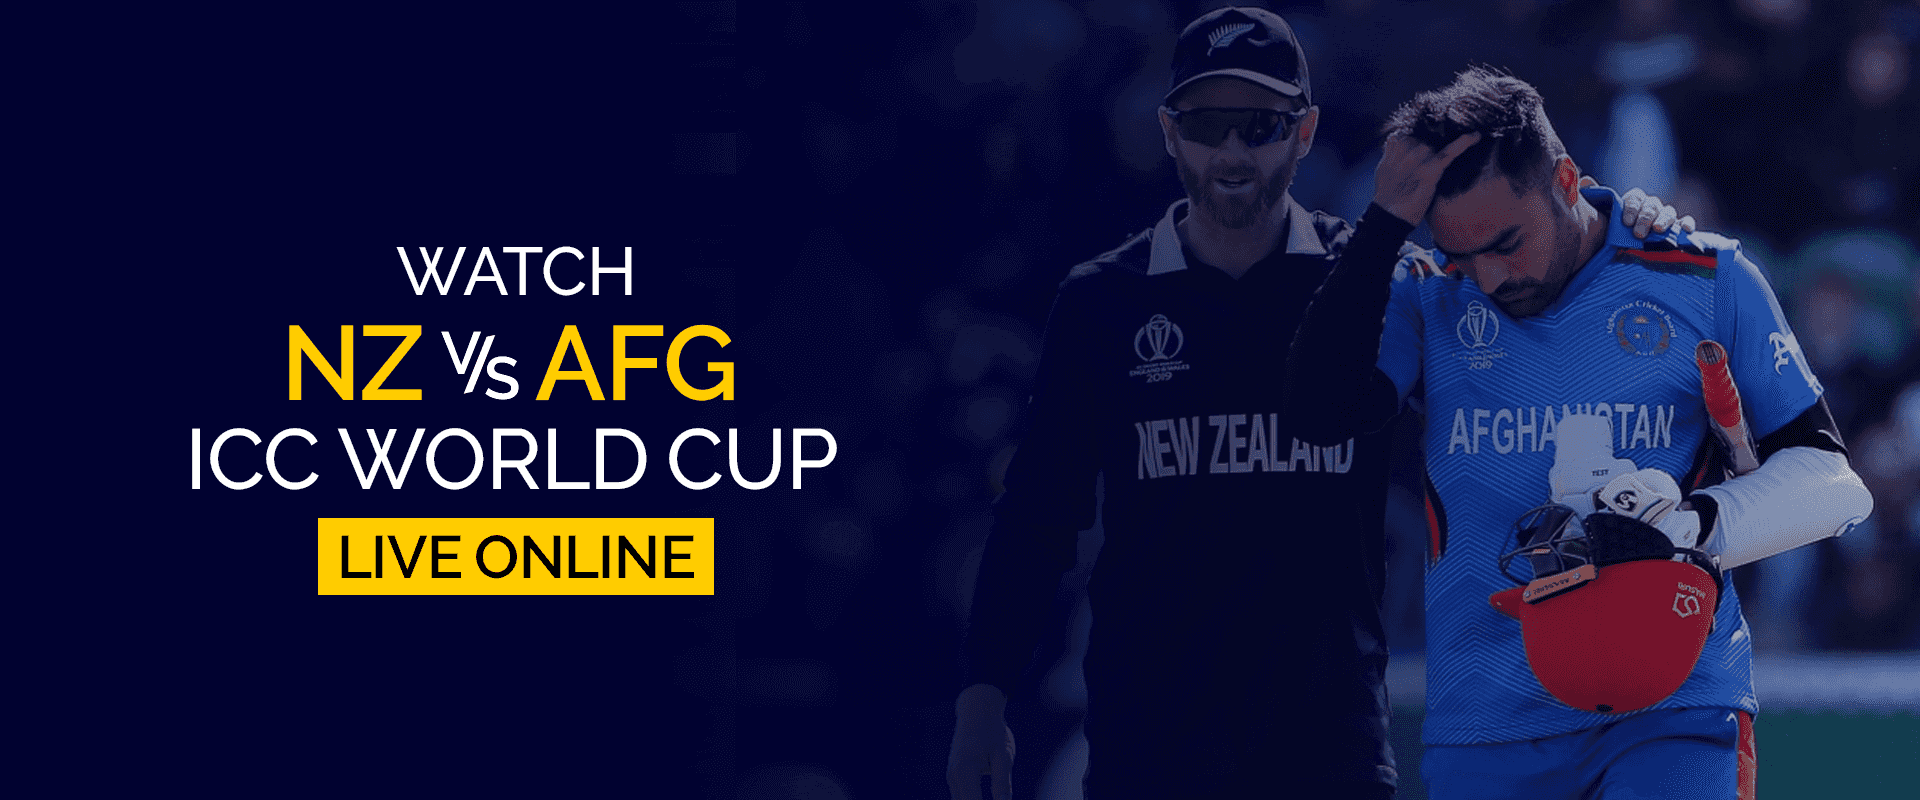 Смотрите матч чемпионата мира ICC между Новой Зеландией и Афганистаном в прямом эфире онлайн.